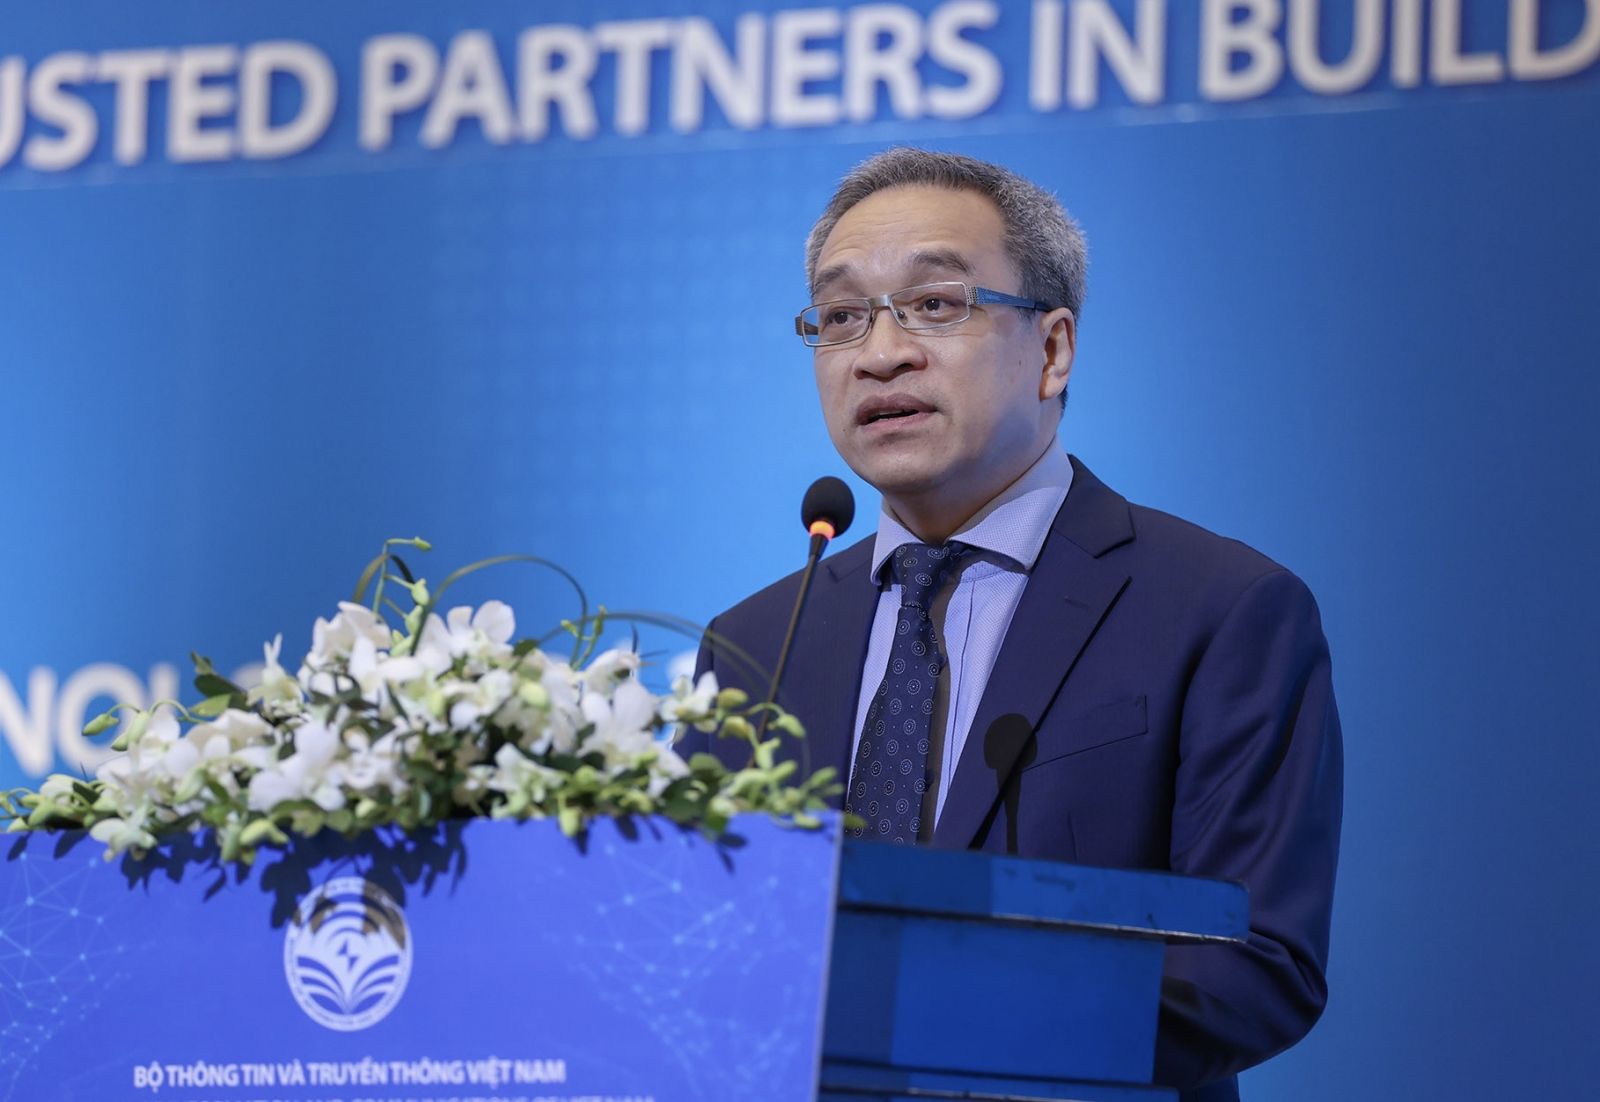 Ông Phan Tâm - Thứ trưởng Bộ Thông tin và Truyền thông phát biểu khai mạc hội nghị 